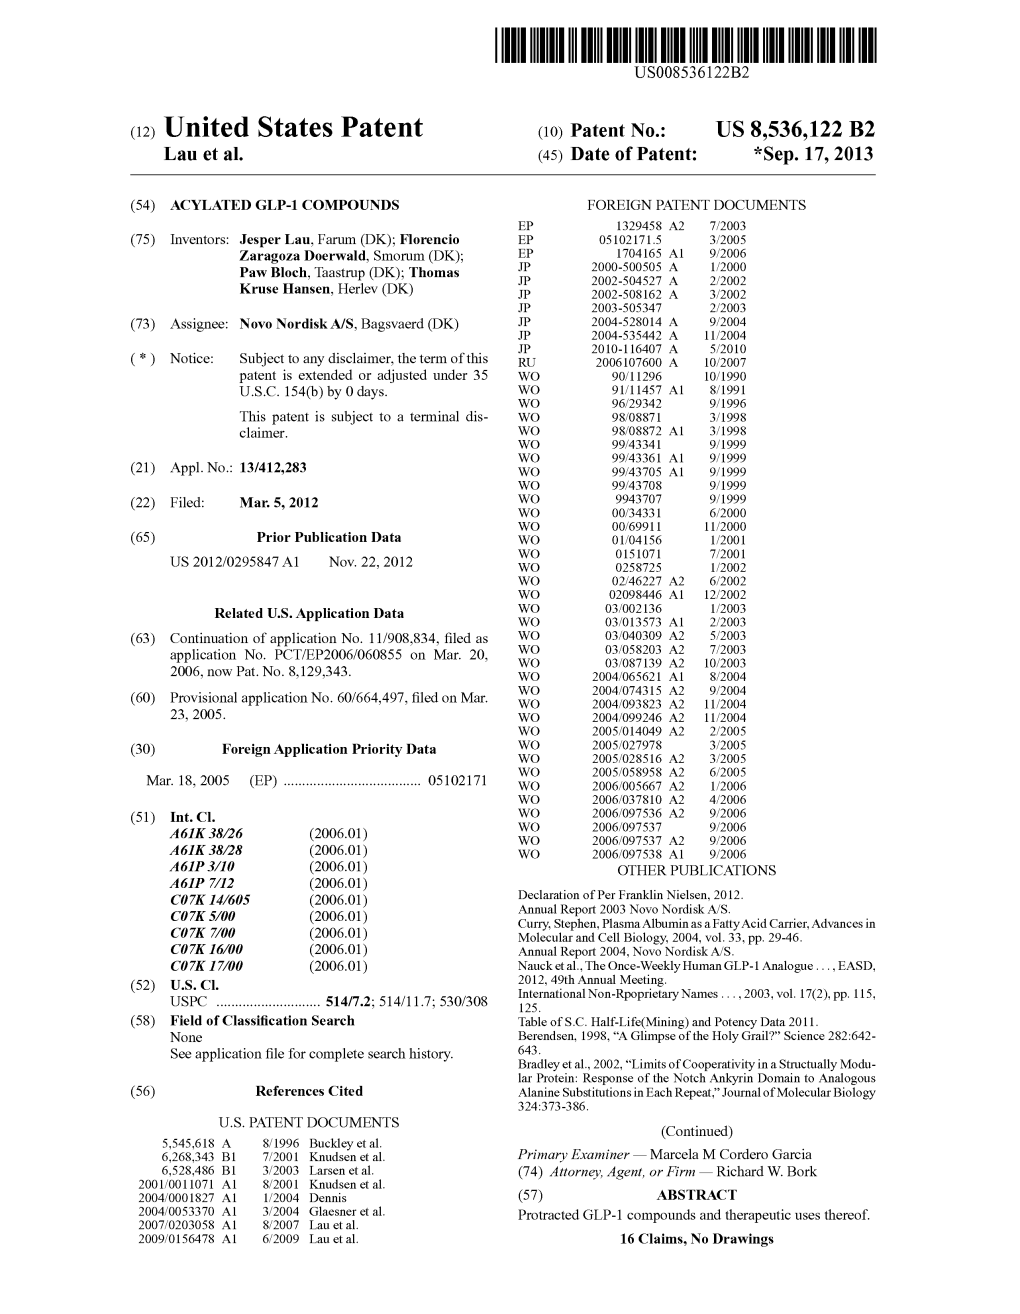 (12) United States Patent (10) Patent No.: US 8,536,122 B2 Lau Et Al